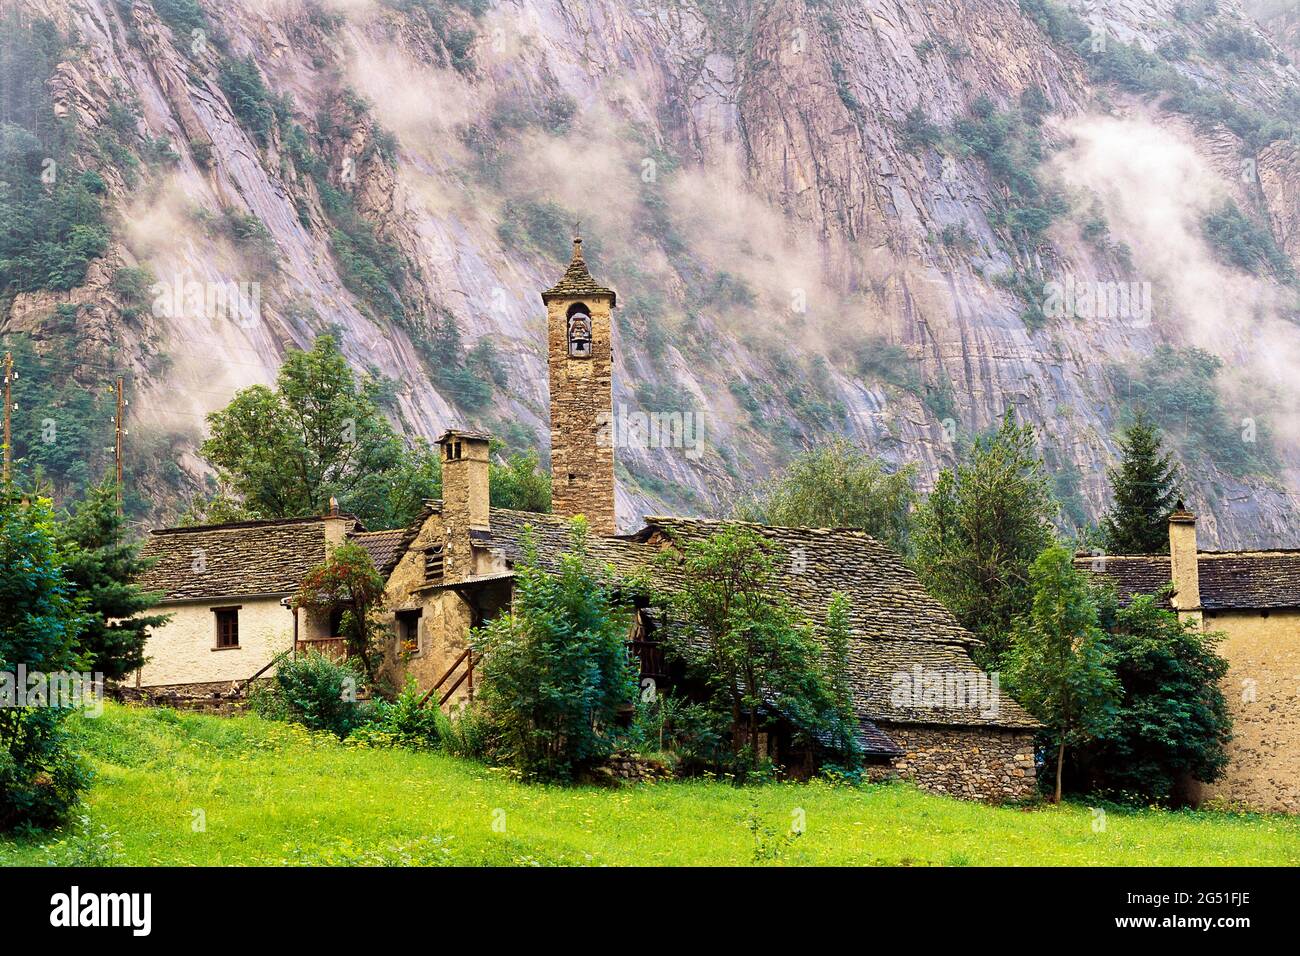 Vista de la iglesia de piedra en el valle, San Carlo, Valle Maggia, Cantón Ticino, Suiza Foto de stock